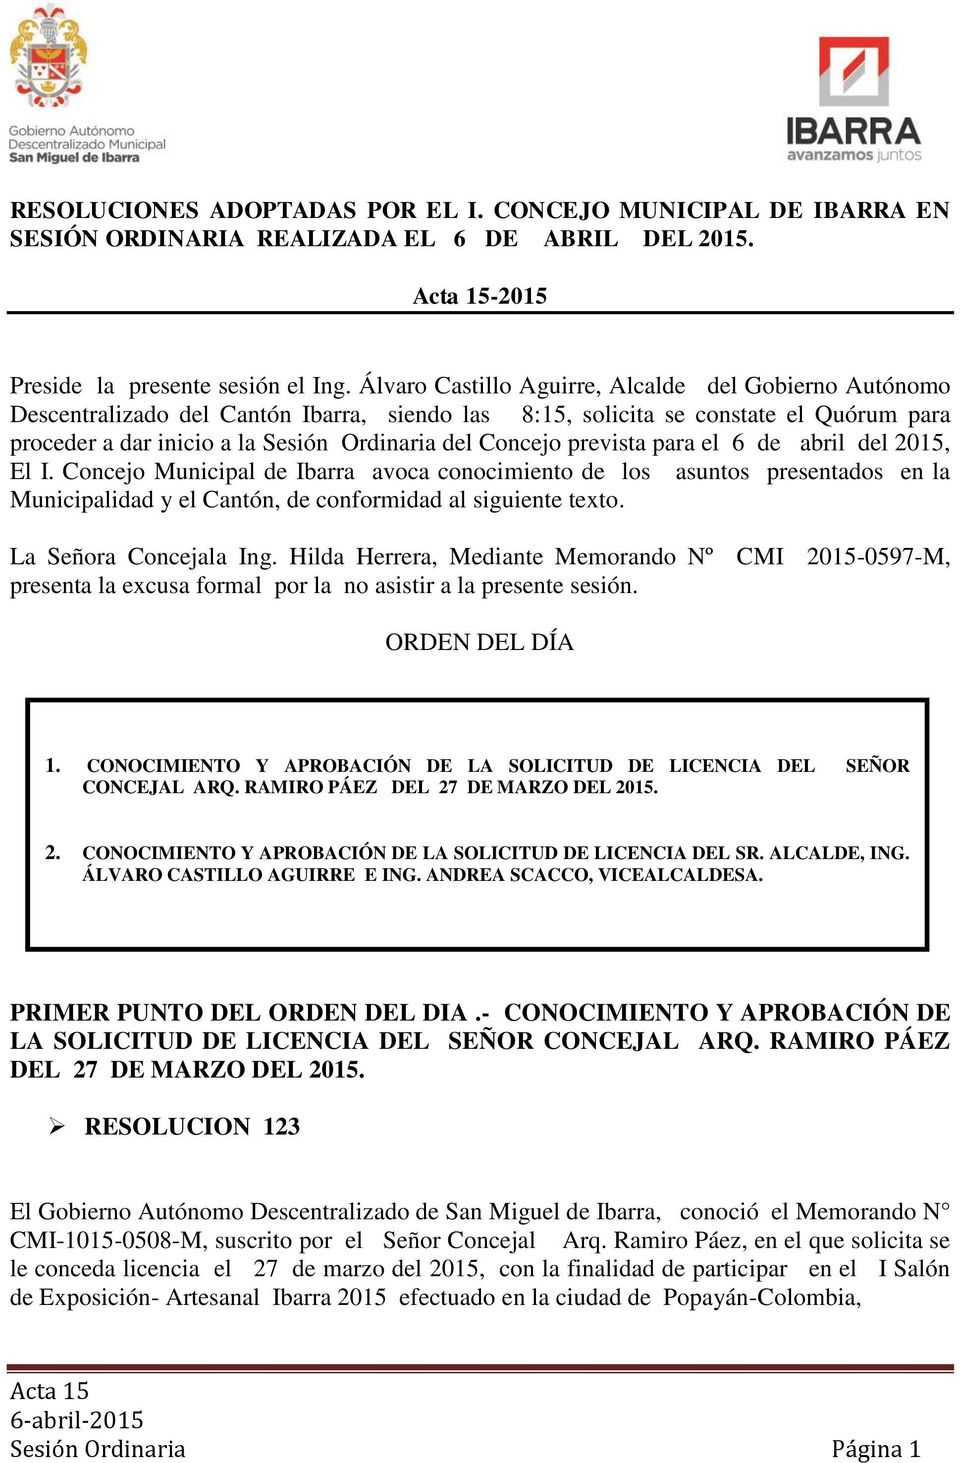 prevista para el 6 de abril del 2015, El I. Concejo Municipal de Ibarra avoca conocimiento de los asuntos presentados en la Municipalidad y el Cantón, de conformidad al siguiente teto.